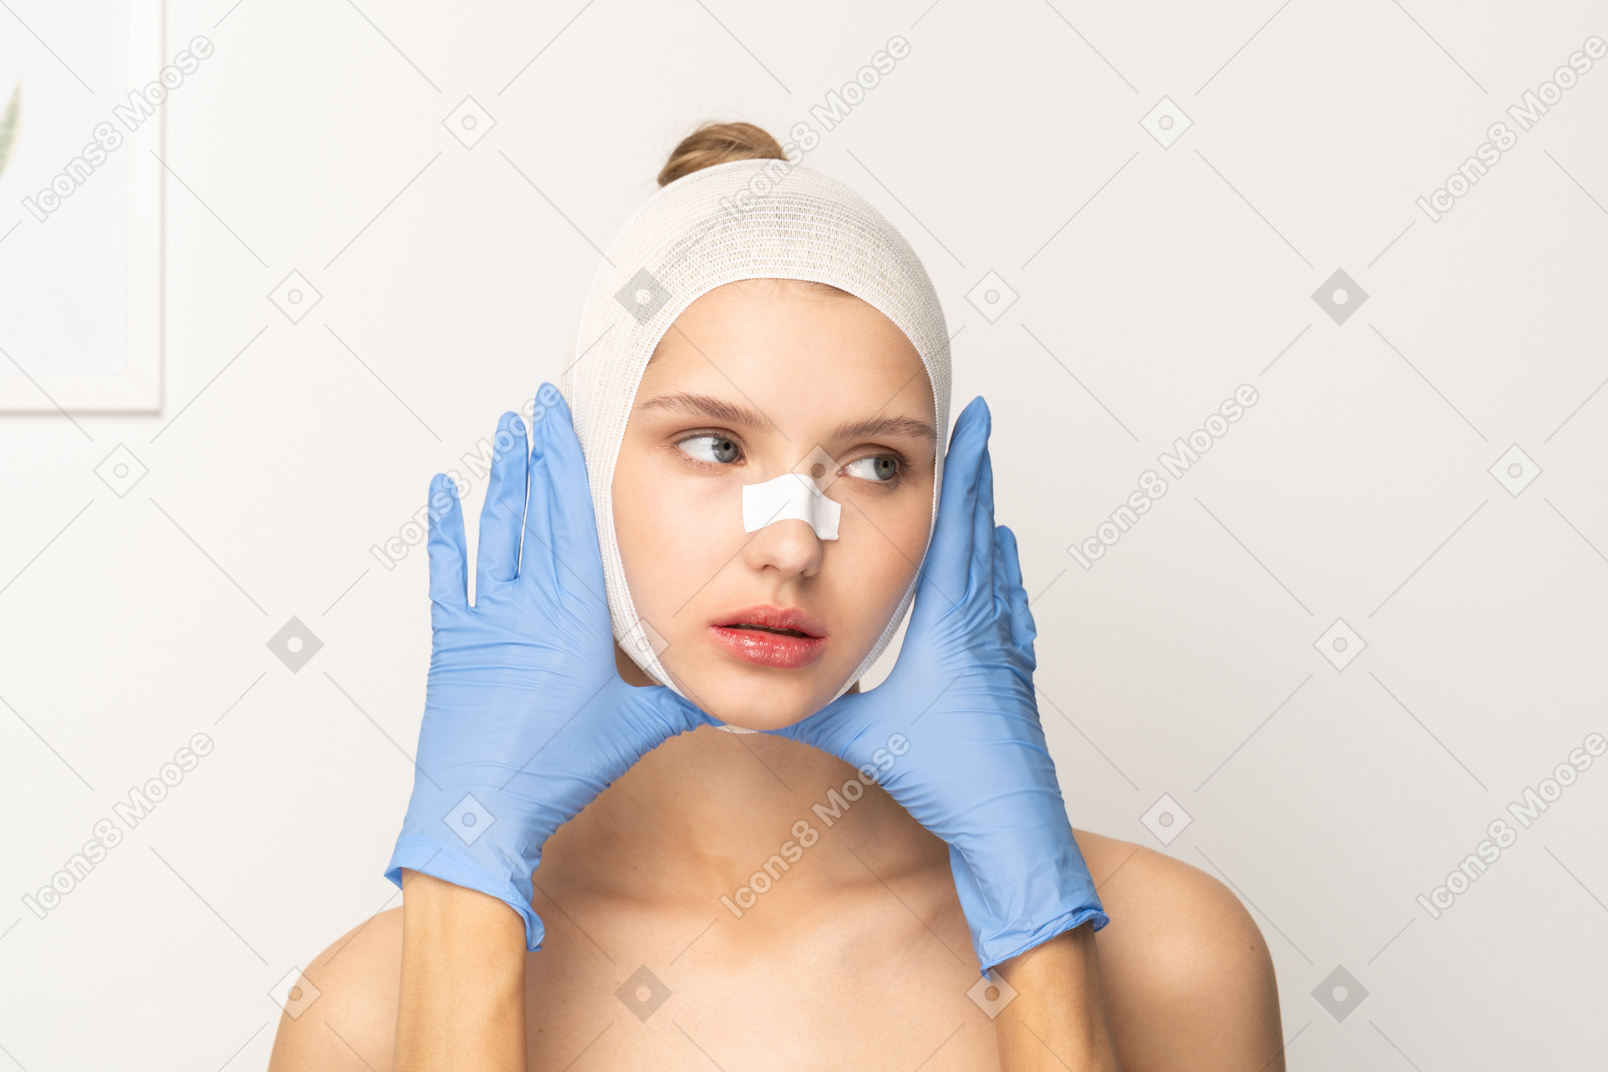 Paciente do sexo feminino com mãos enluvadas emoldurando seu rosto